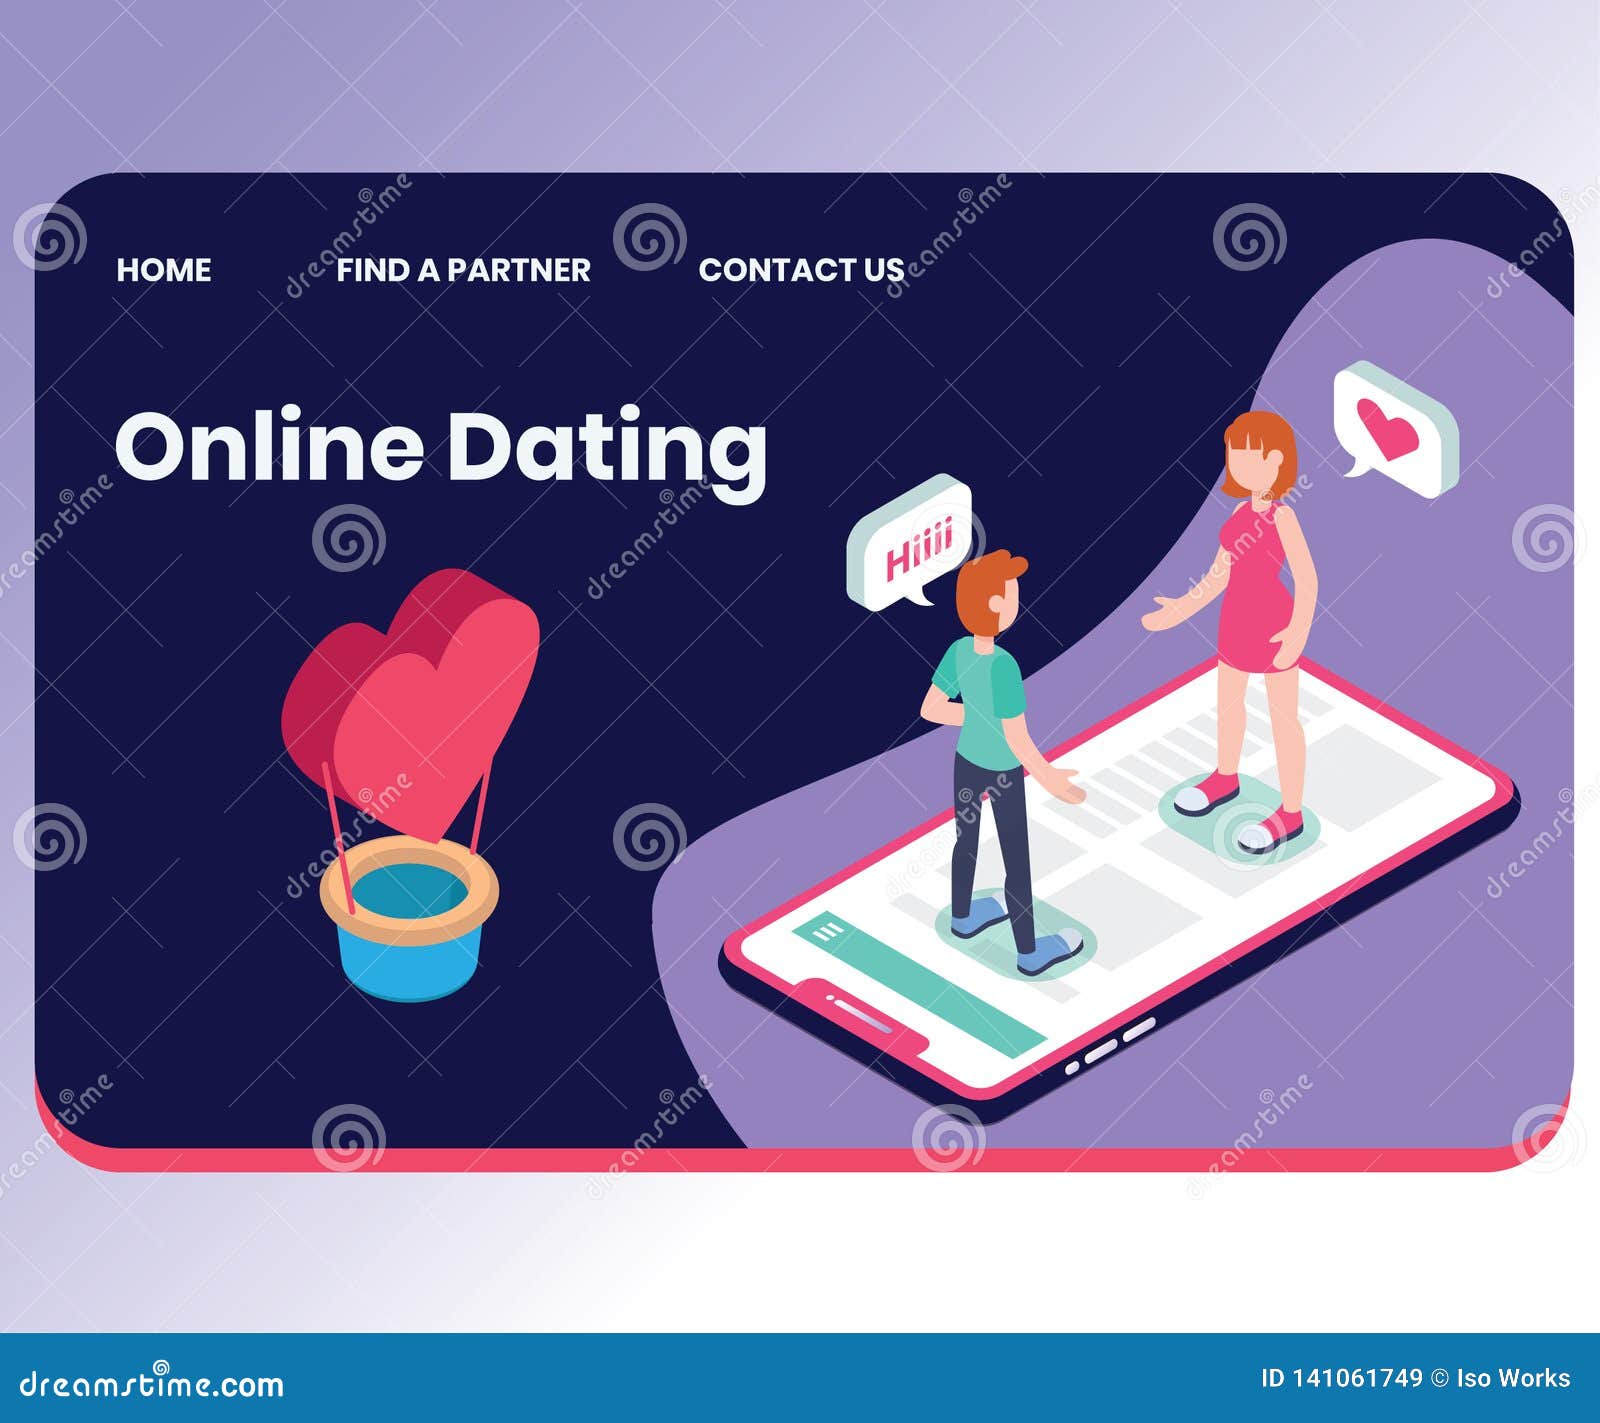 welche online dating plattform)